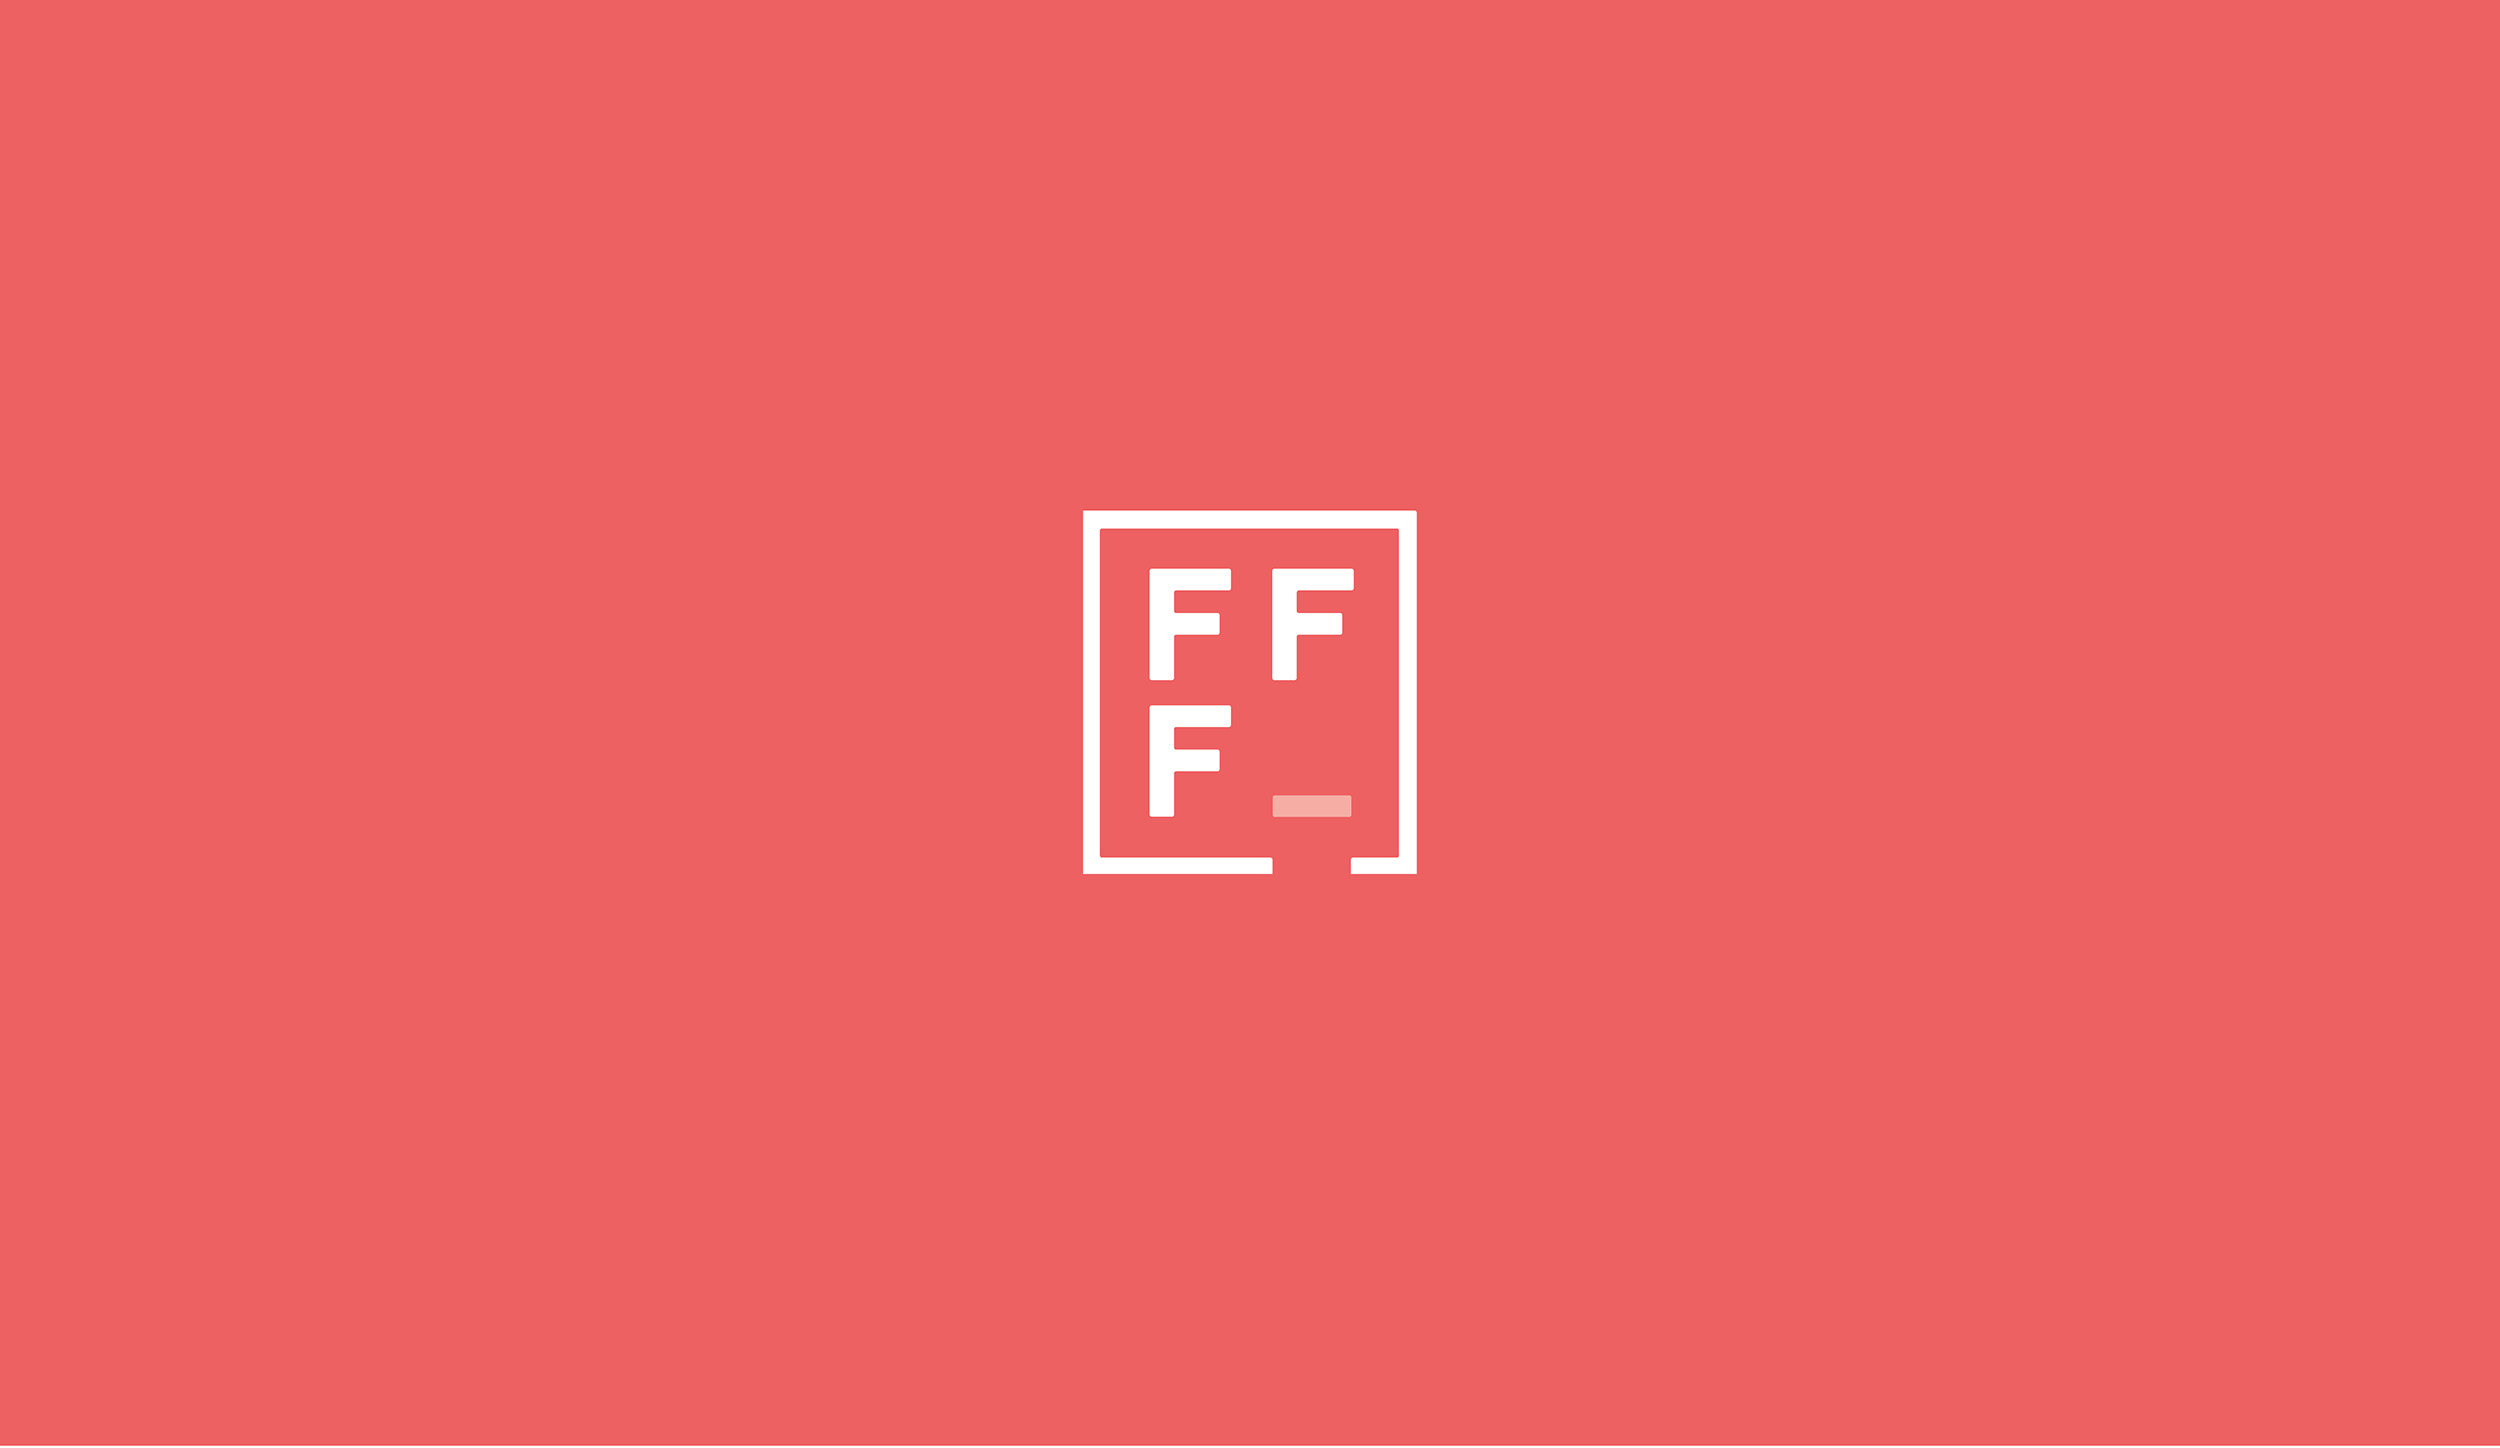 FFF_DESIGN_CAROUSEL_V1.jpg